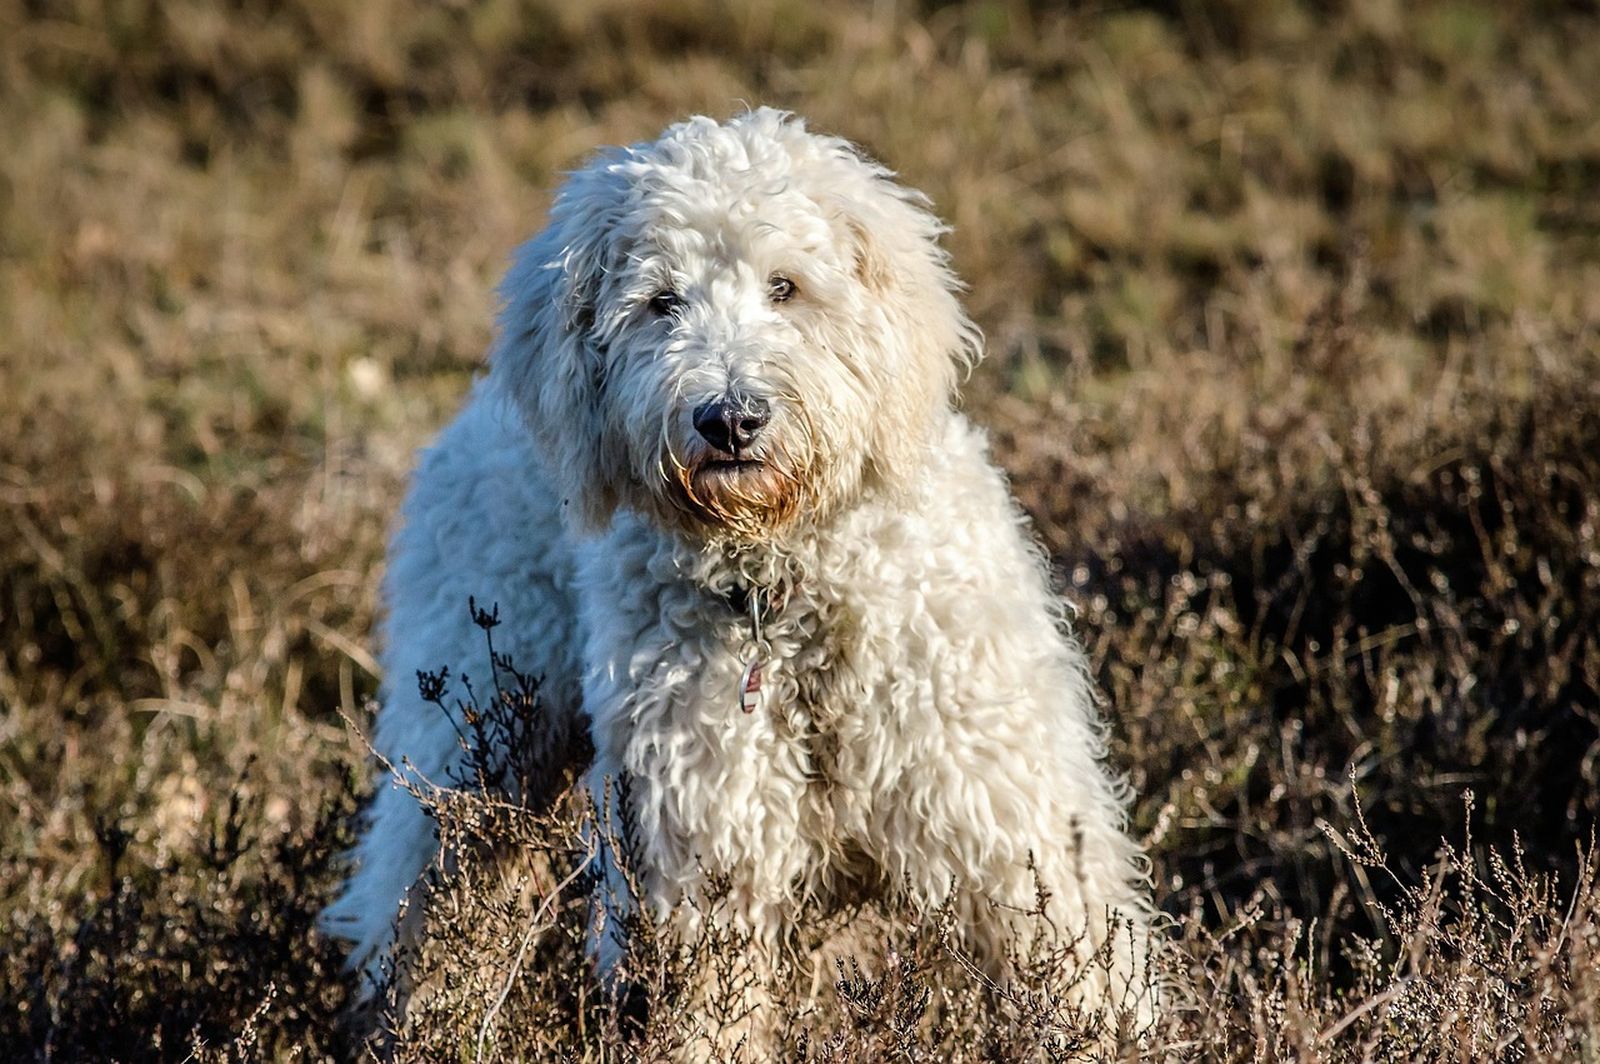 Ein hellbeiger Hund der Hybridhunderasse Goldendoodle steht auf einem dichtbewachsenen Feld und schaut aufmerksam den Betrachter an